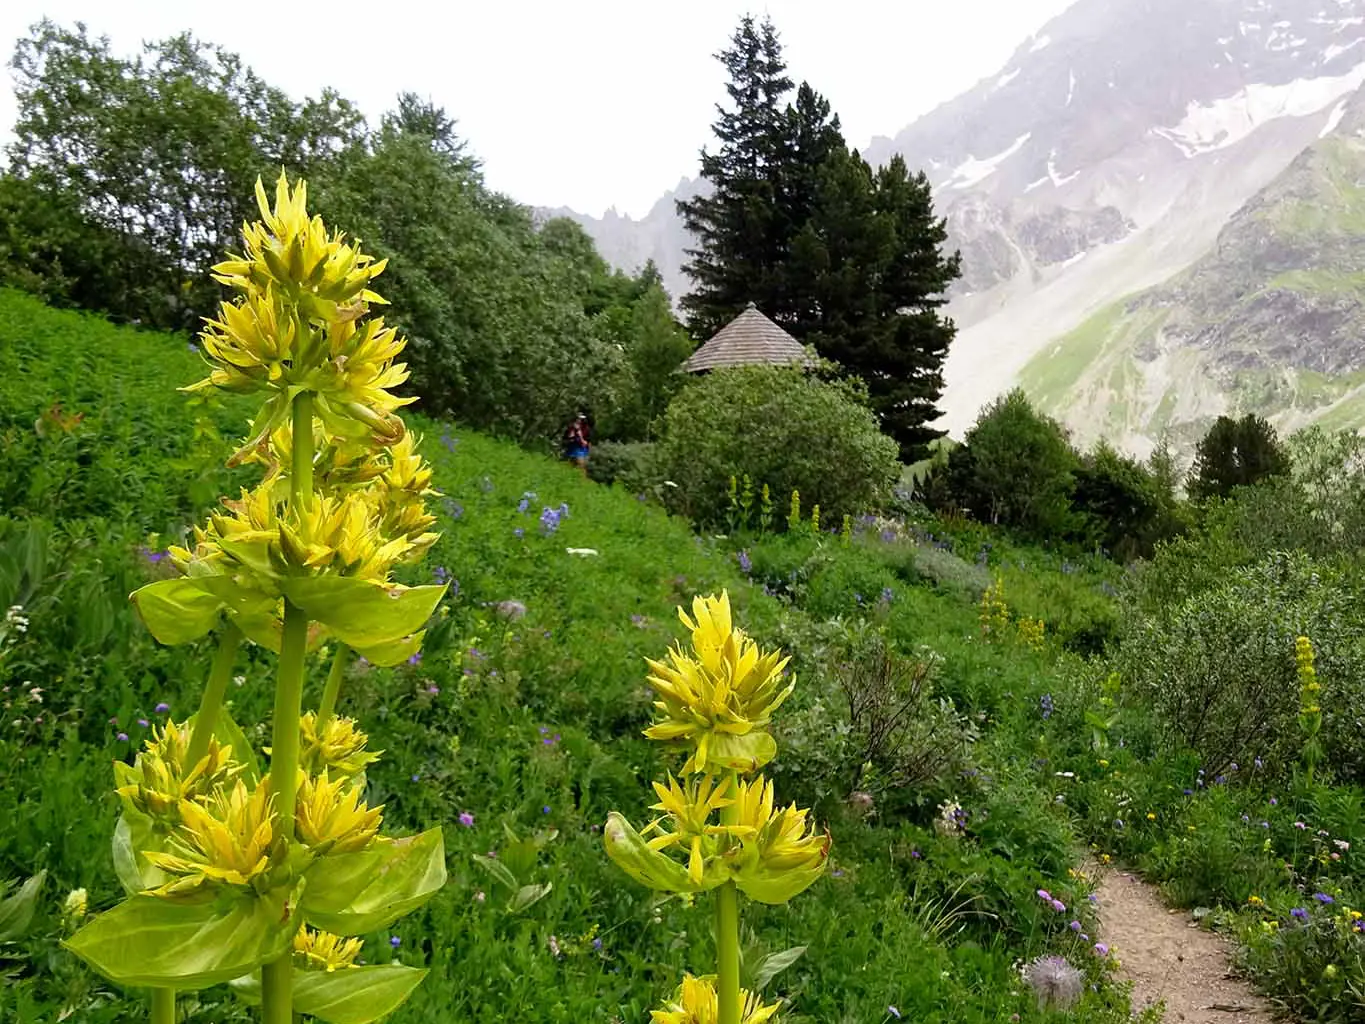 Gelber Enzian ist der klassische Vertreter eines jeden botanischen Gartens mit alpiner Flora.